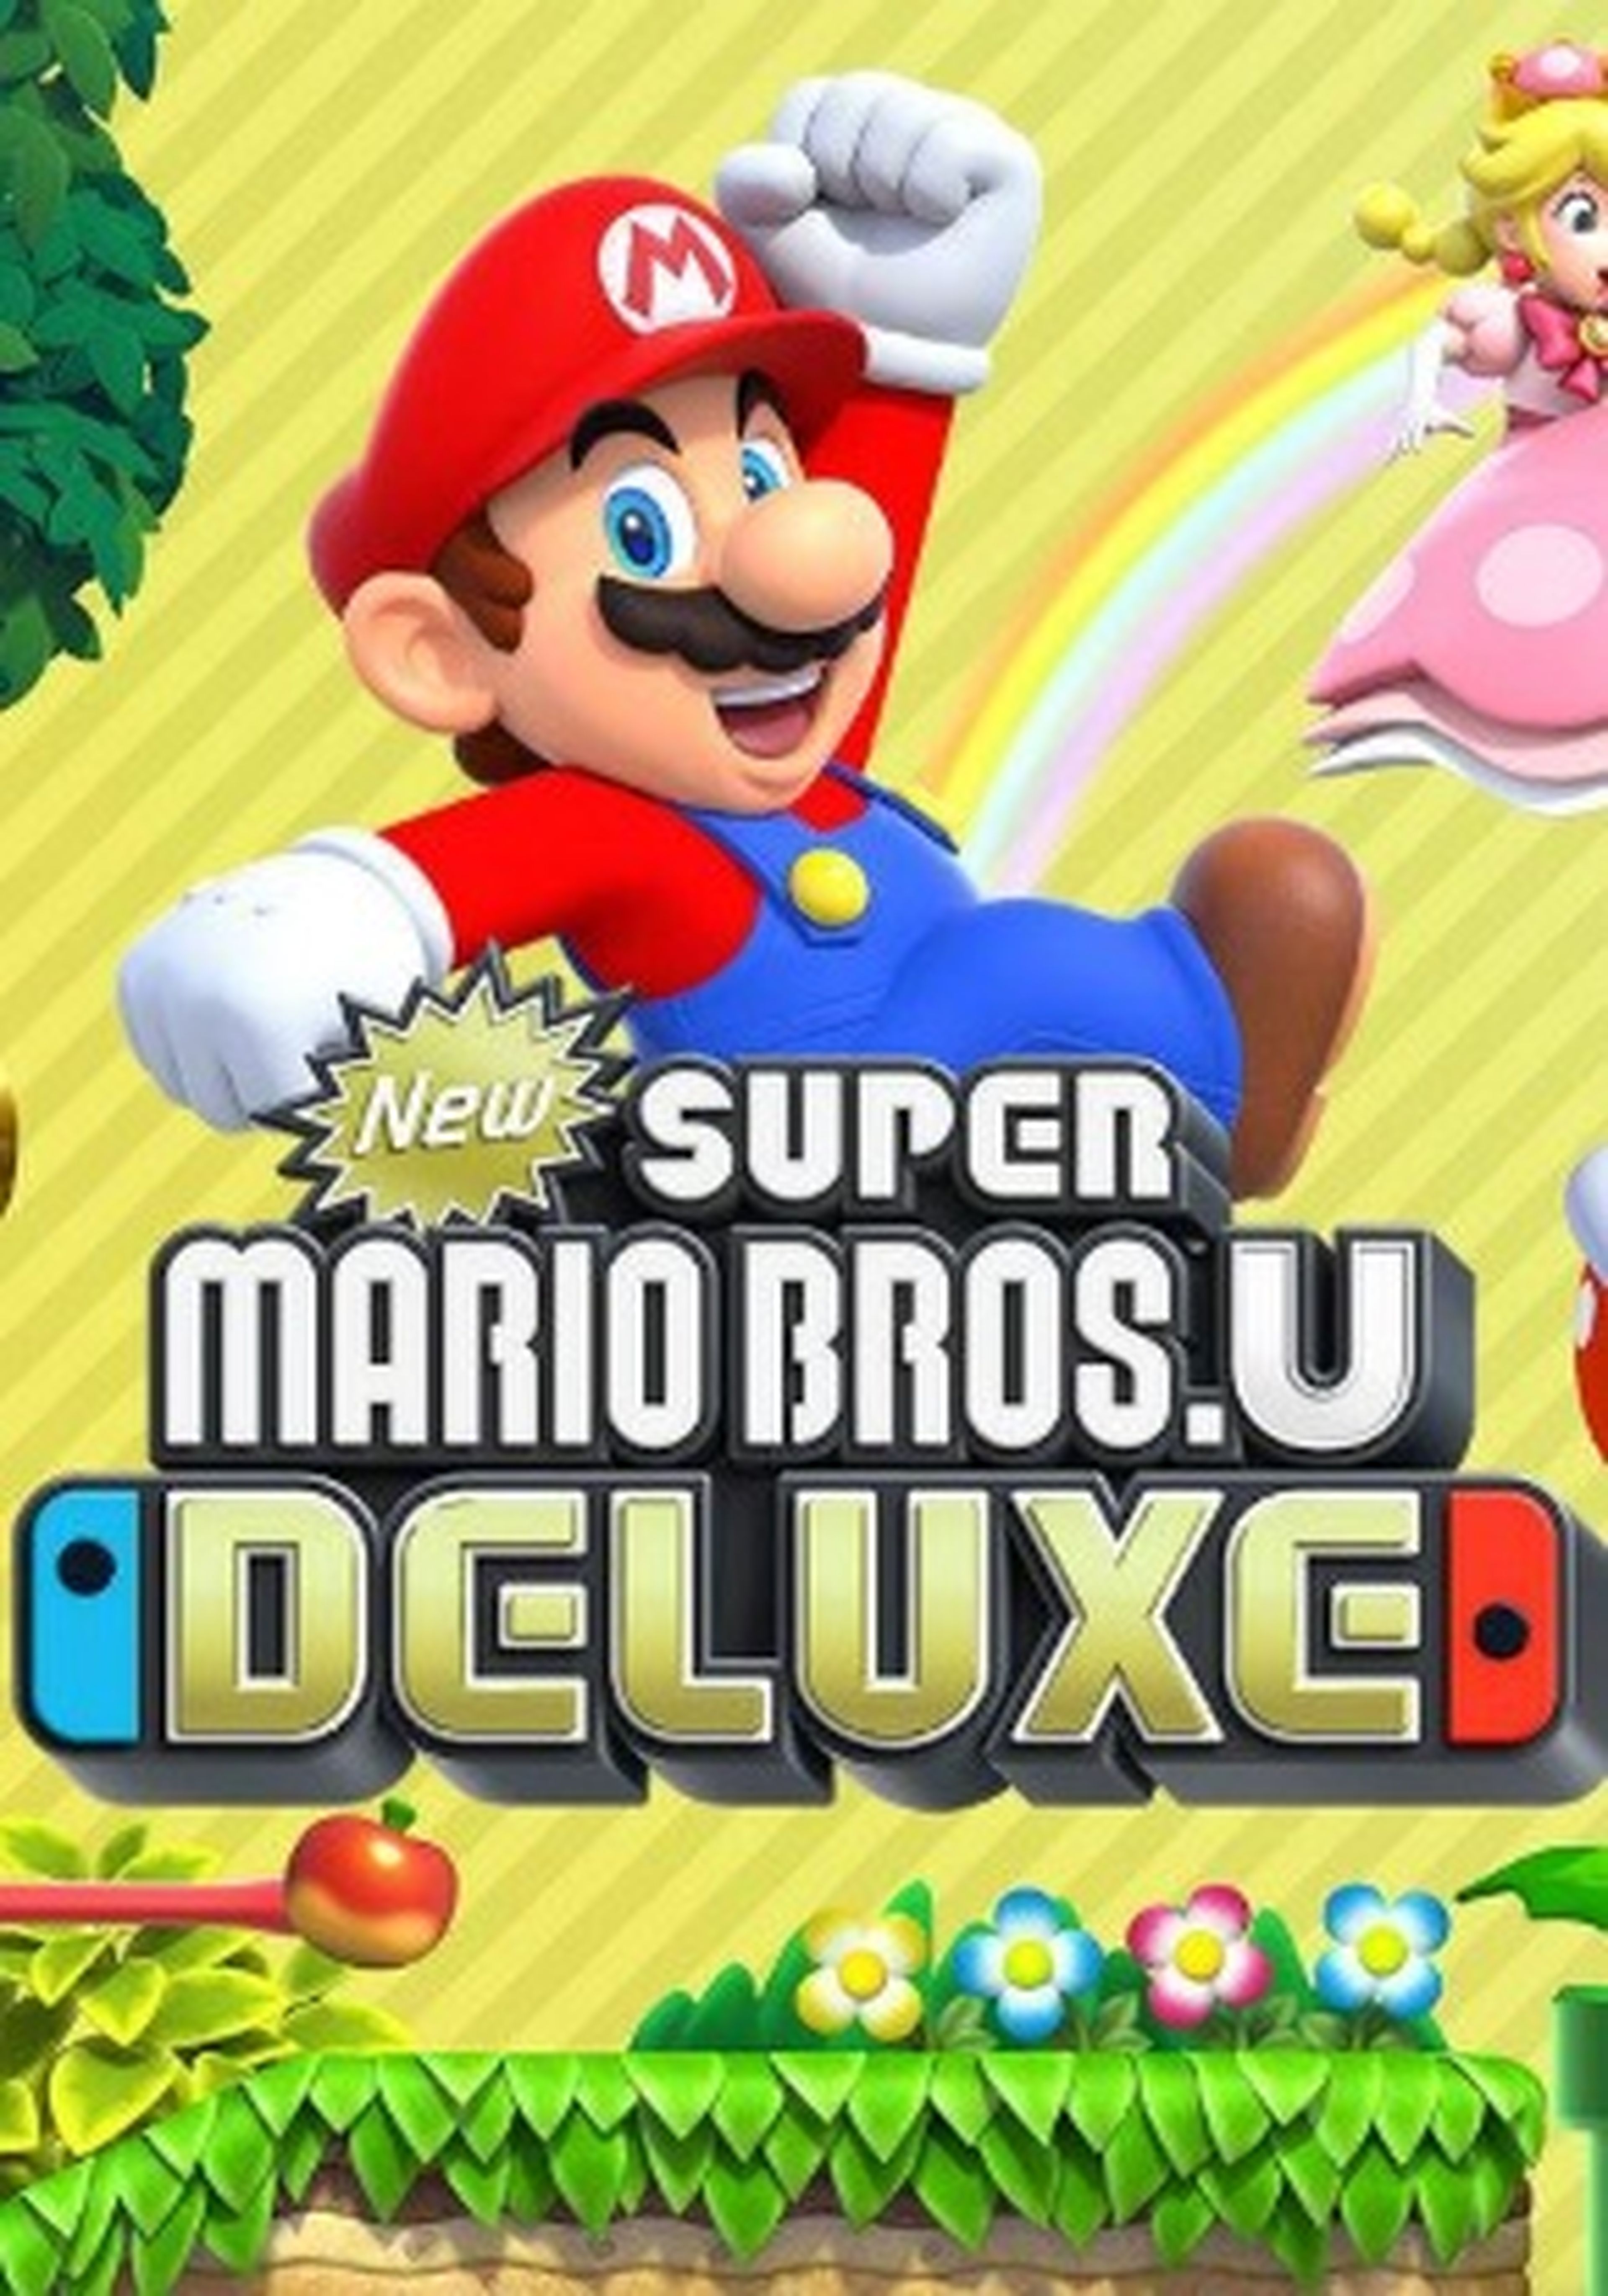 Mario deluxe nintendo. Игра New super Mario Bros. U Deluxe. Супер Марио БРОС U Делюкс. Super Mario Bros Deluxe Nintendo Switch. New super Mario Bros u Deluxe Nintendo Switch.